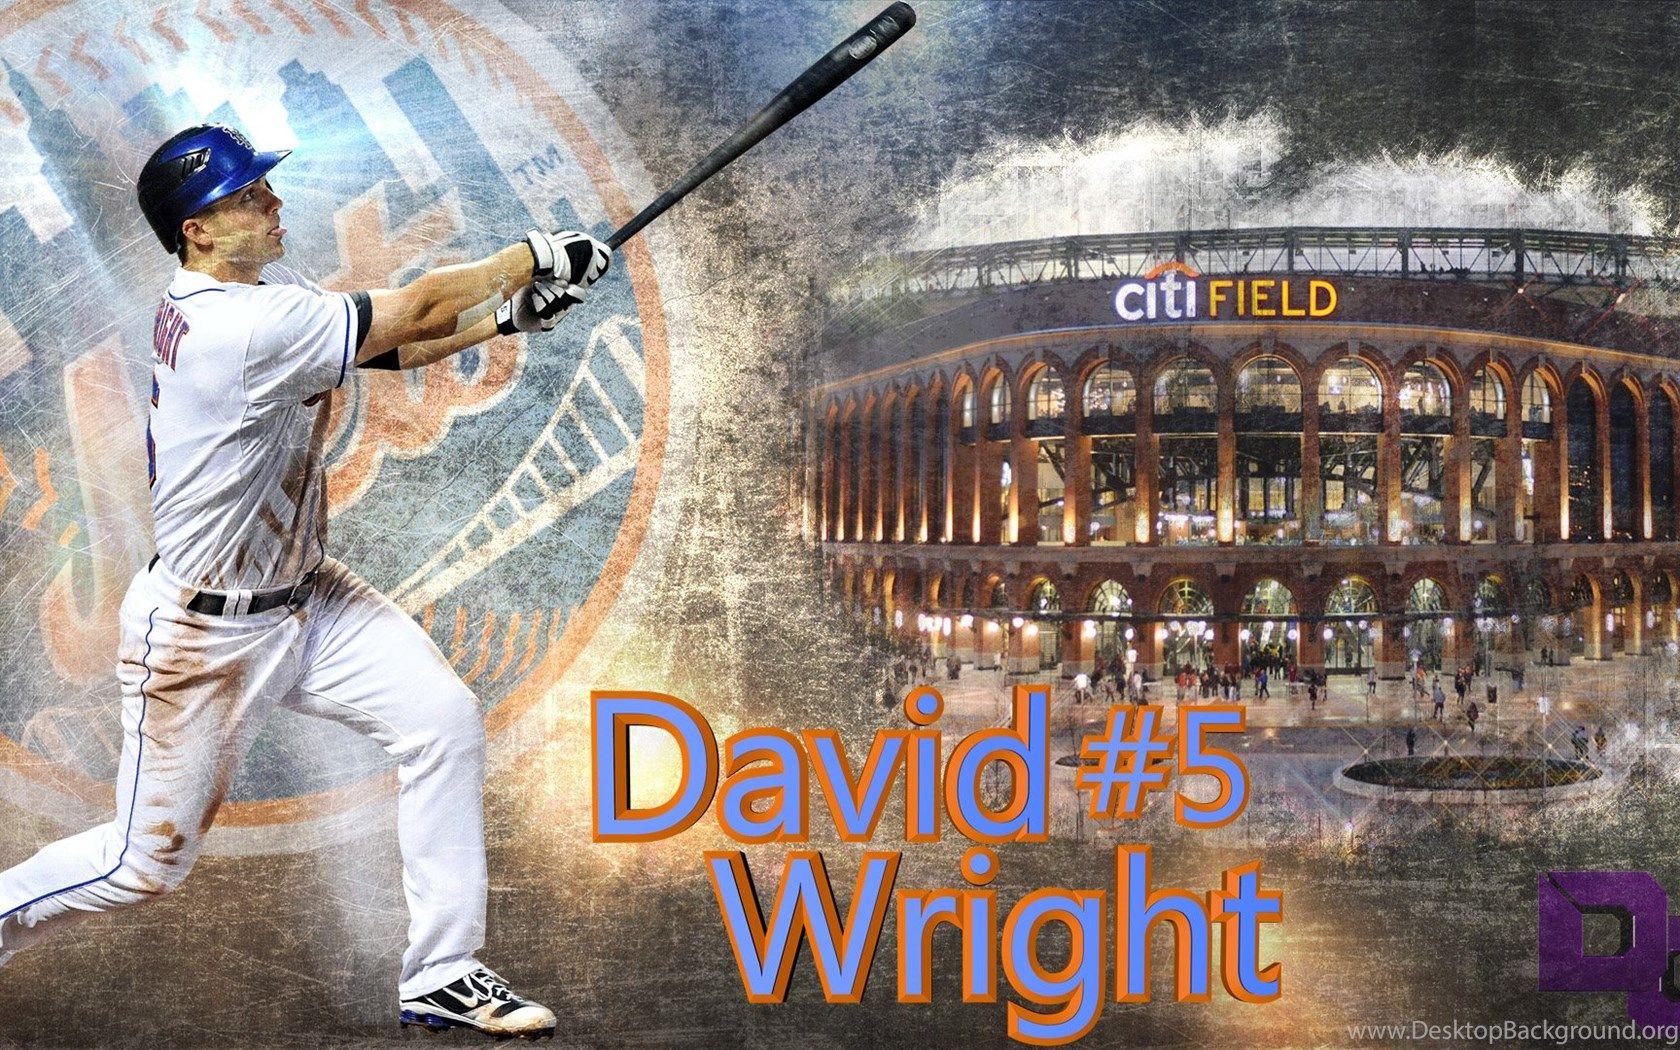 Athlete Logos on X: @Mets Free David Wright Phone Wallpaper #ThankYouDavid  #LGM  / X